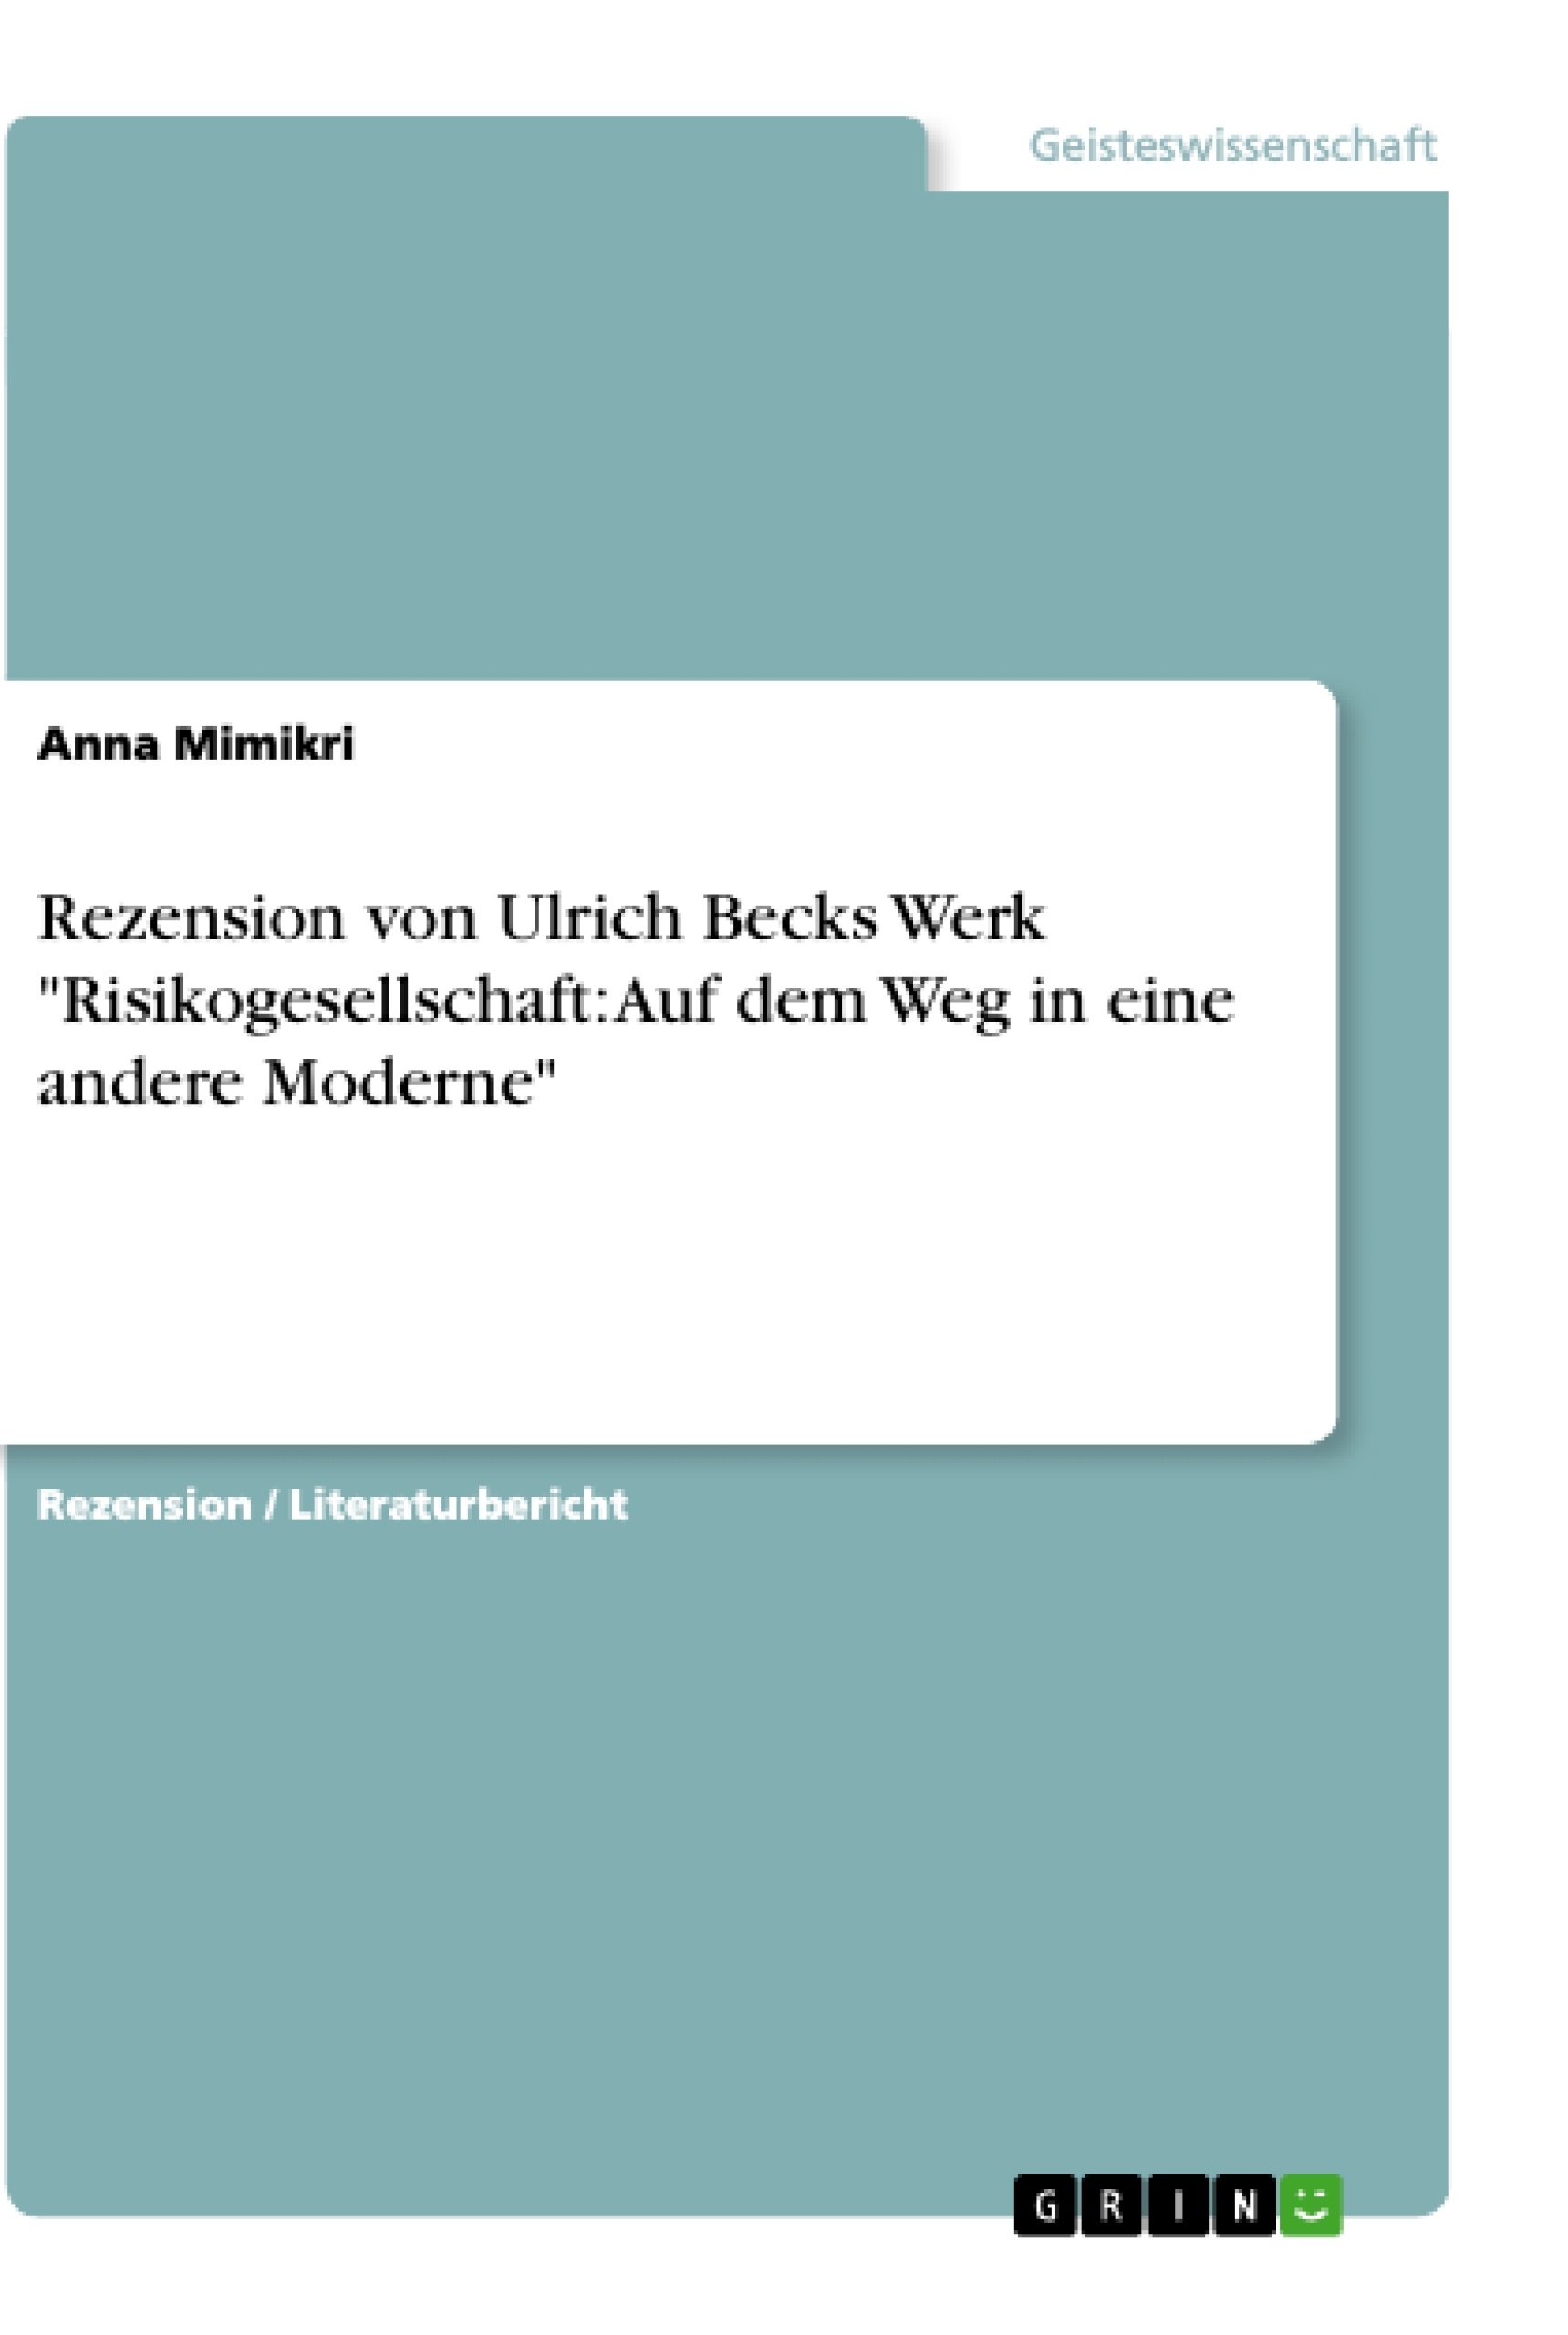 Title: Rezension von Ulrich Becks Werk "Risikogesellschaft: Auf dem Weg in eine andere Moderne"